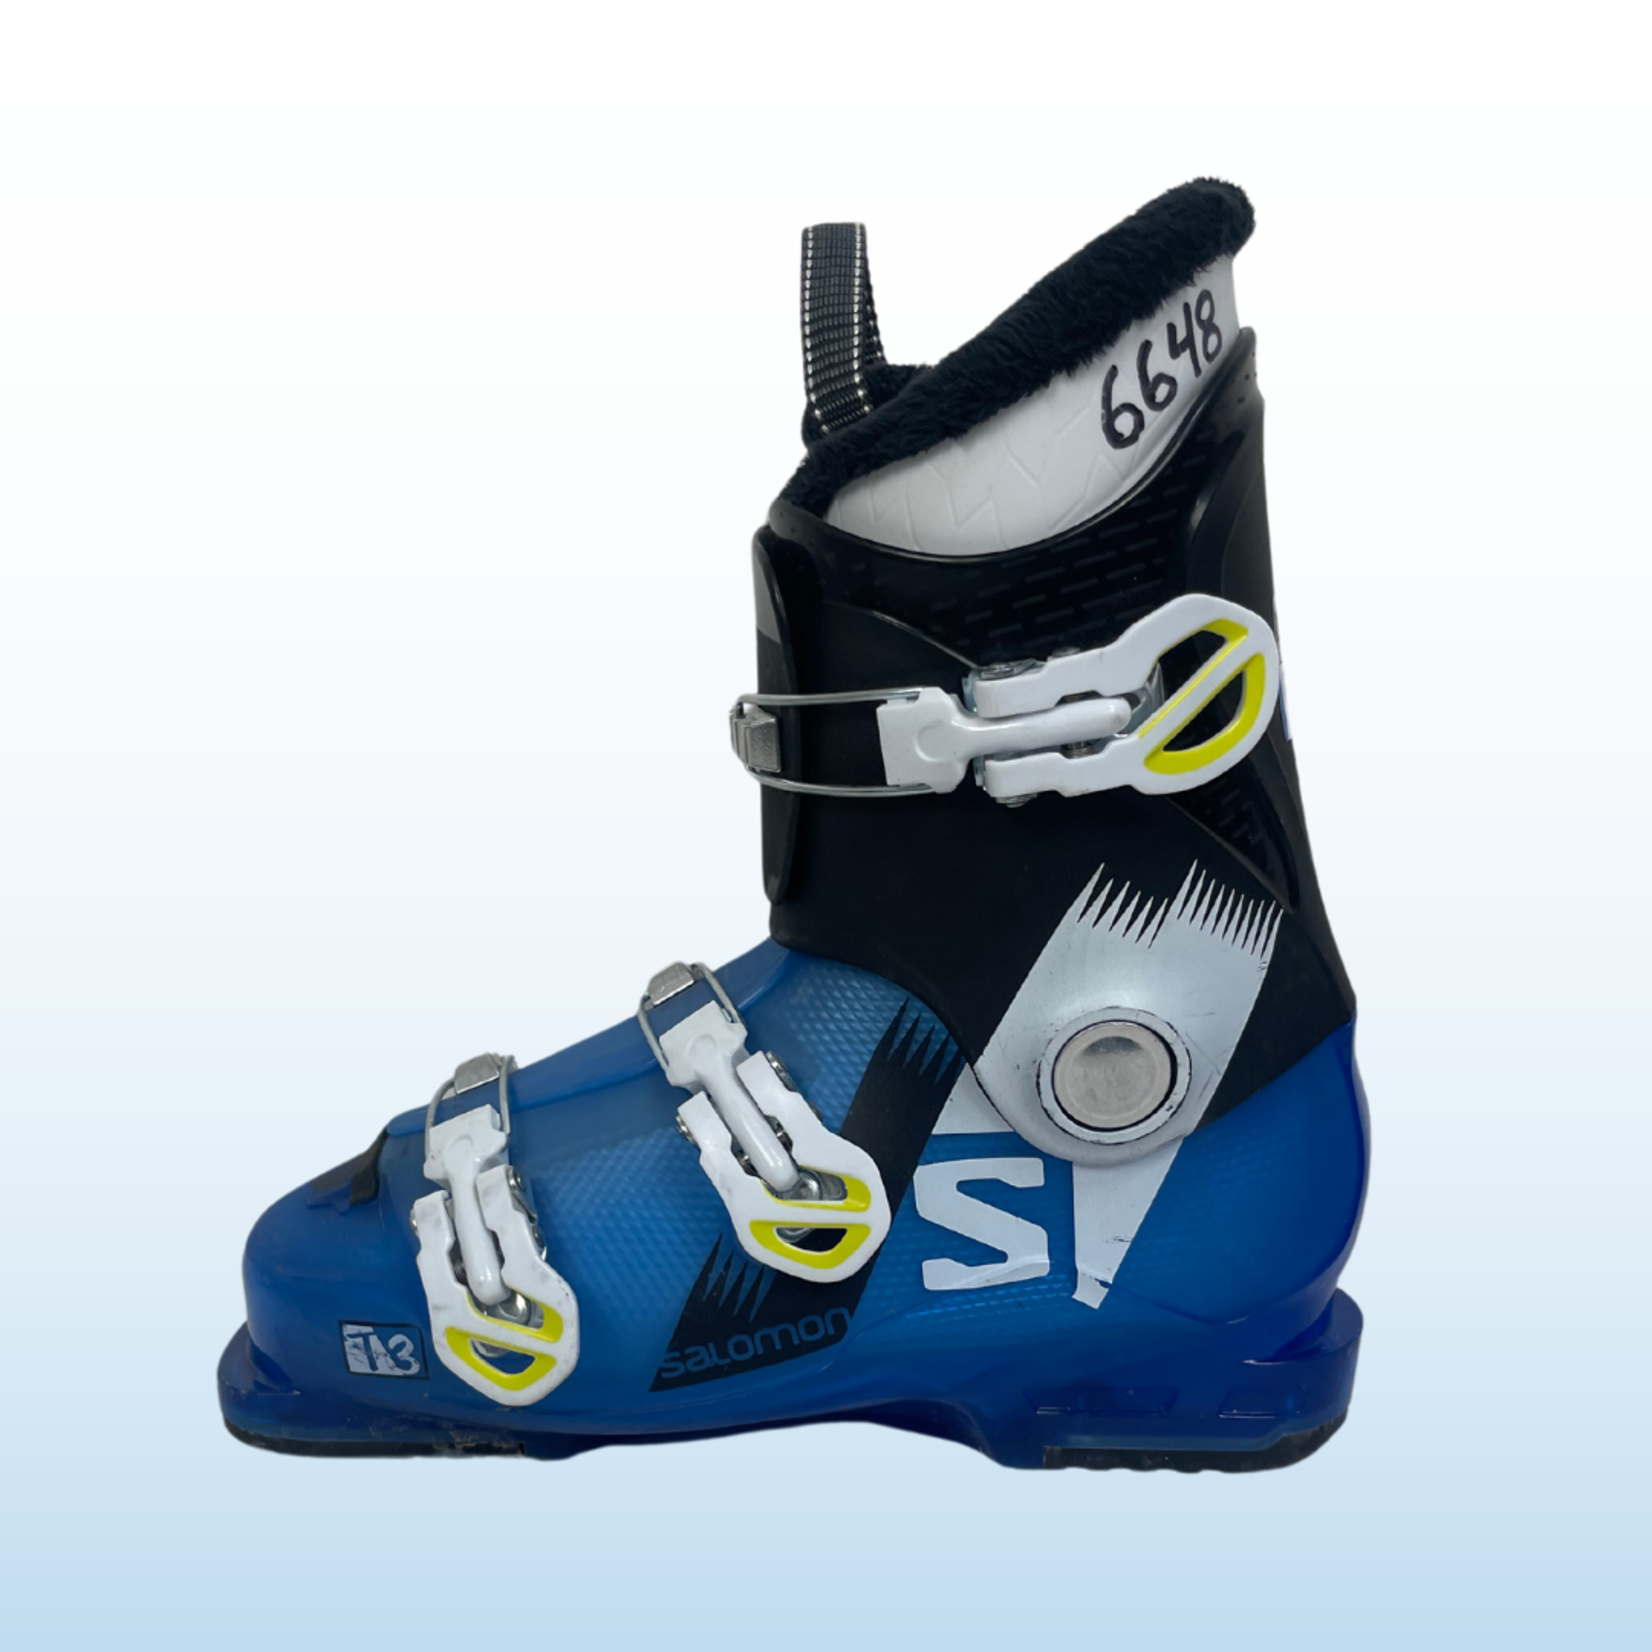 Salomon T3 Kids Ski Boots, Size 25/25.5